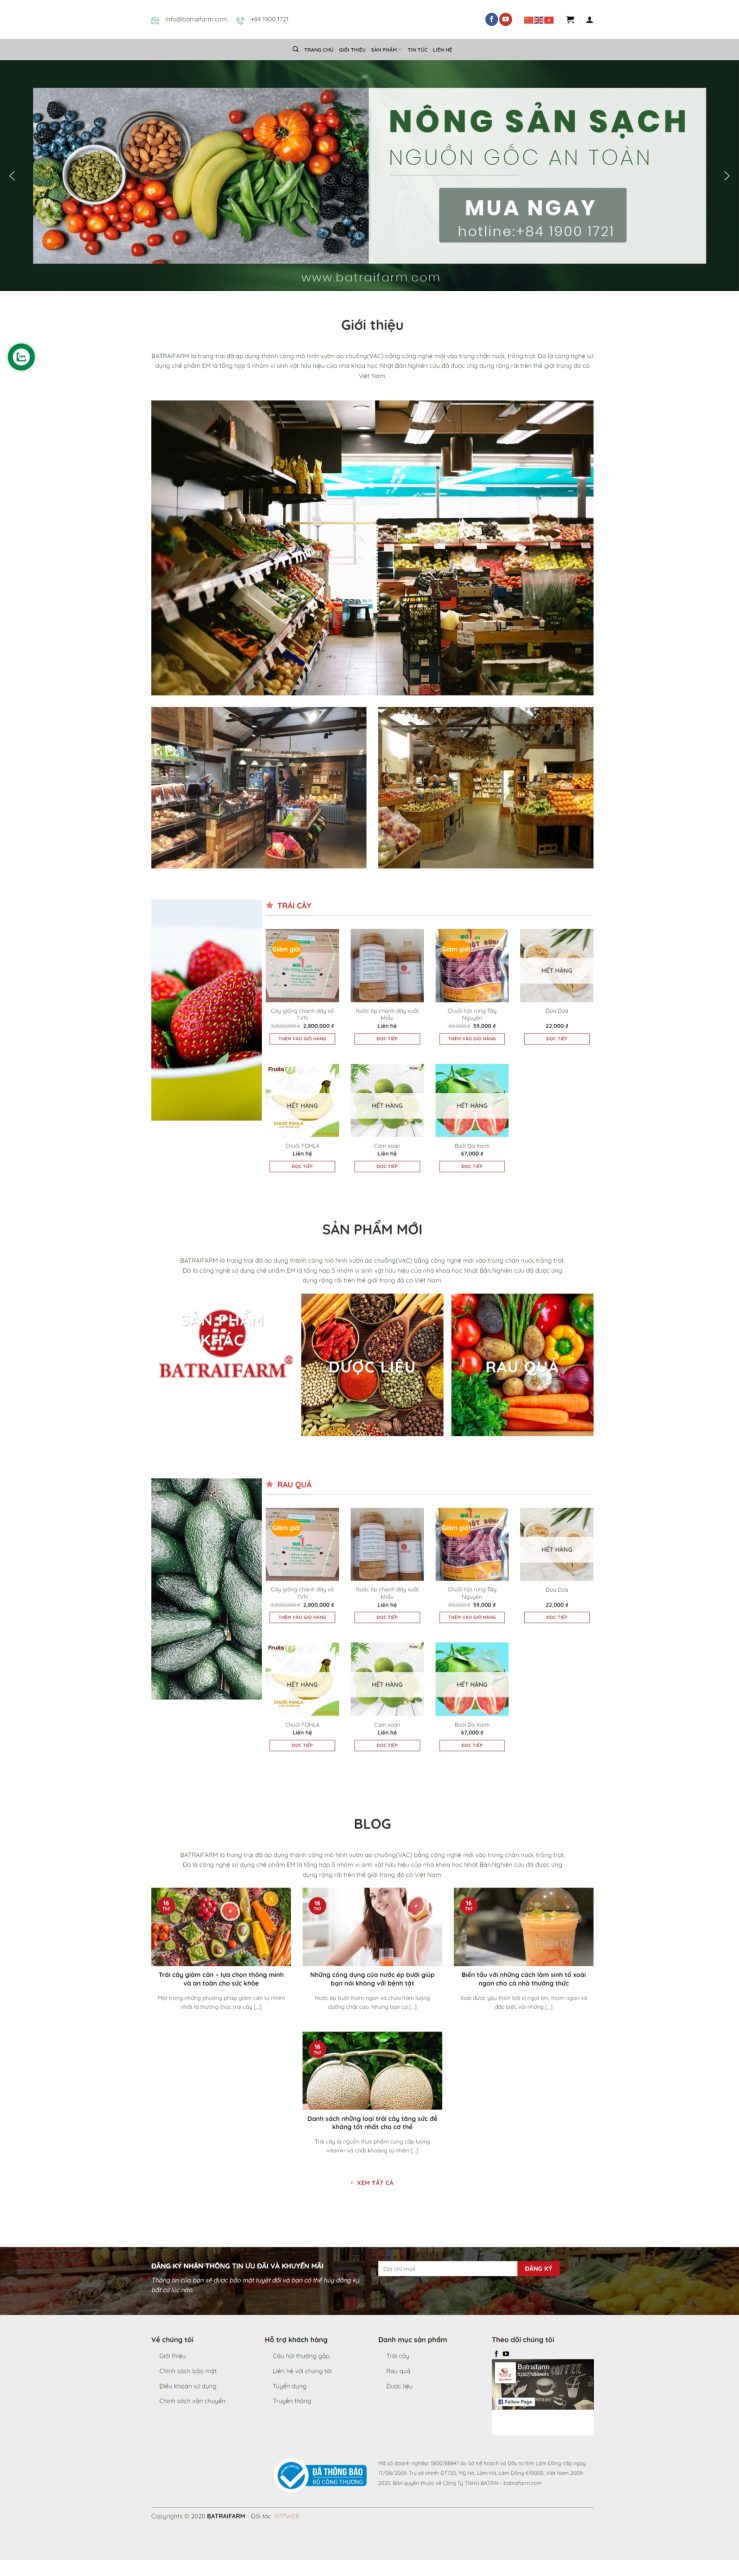 Giao diện website bán đồ ăn, thực phẩm chuyên nghiệp